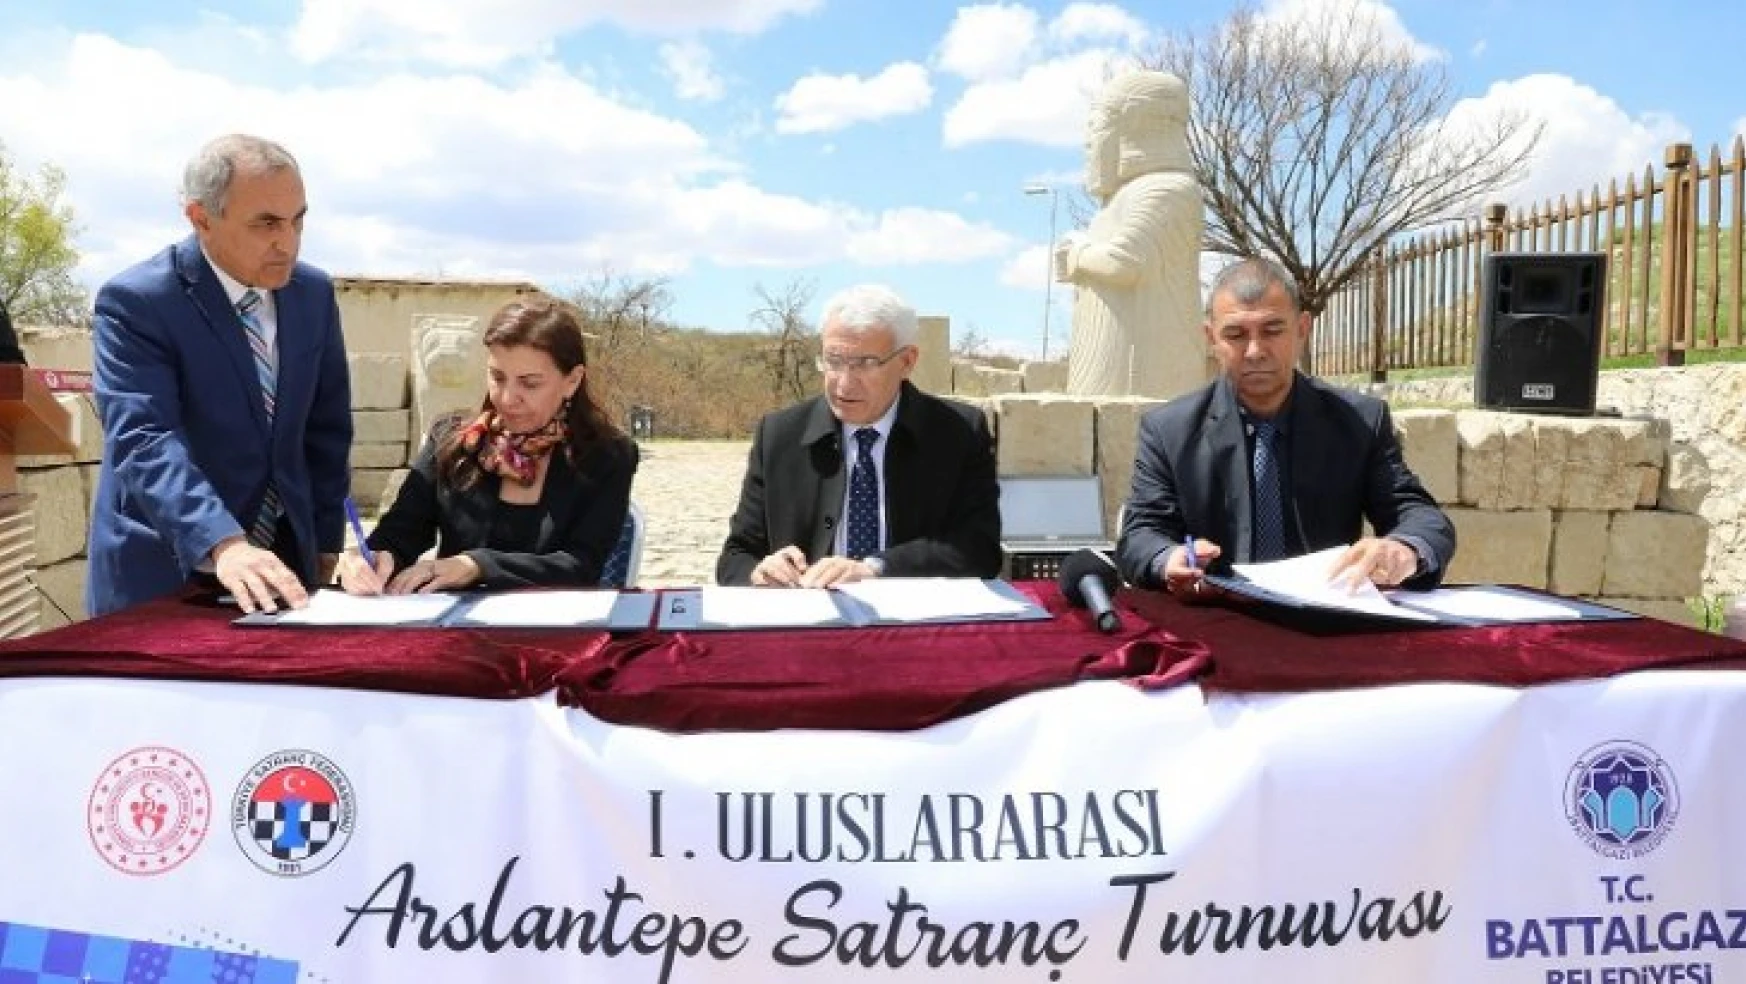 1. Arslantepe Uluslararası Açık Satranç Turnuvası'nın Protokolü Battalgazi'de İmzalandı